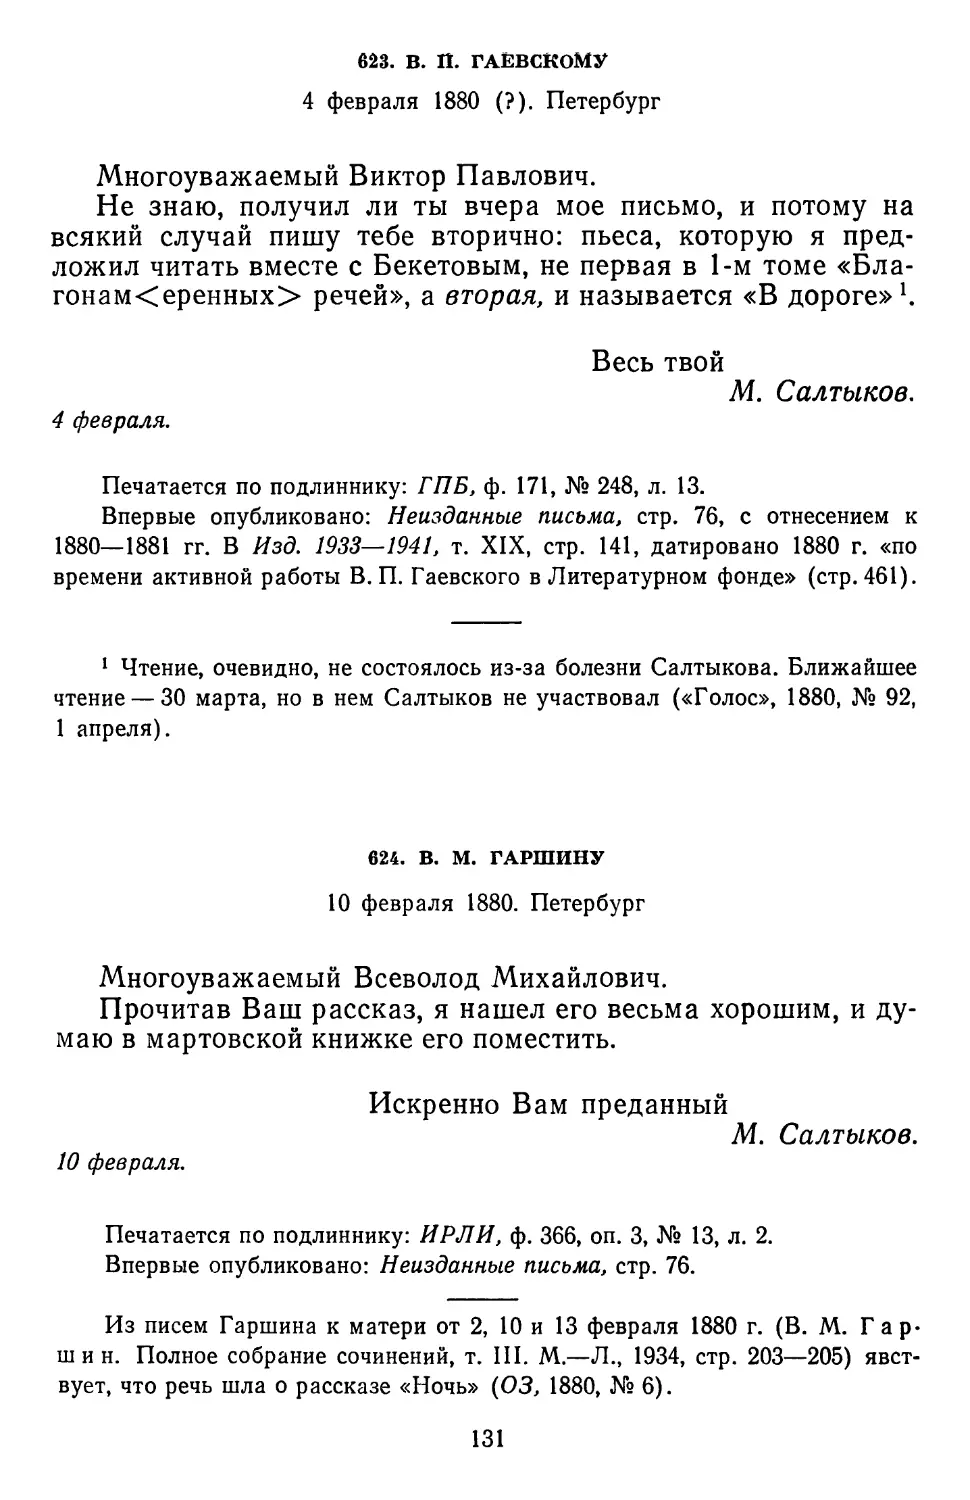 624.В. М. Гаршину.10 февраля 1880. Петербург